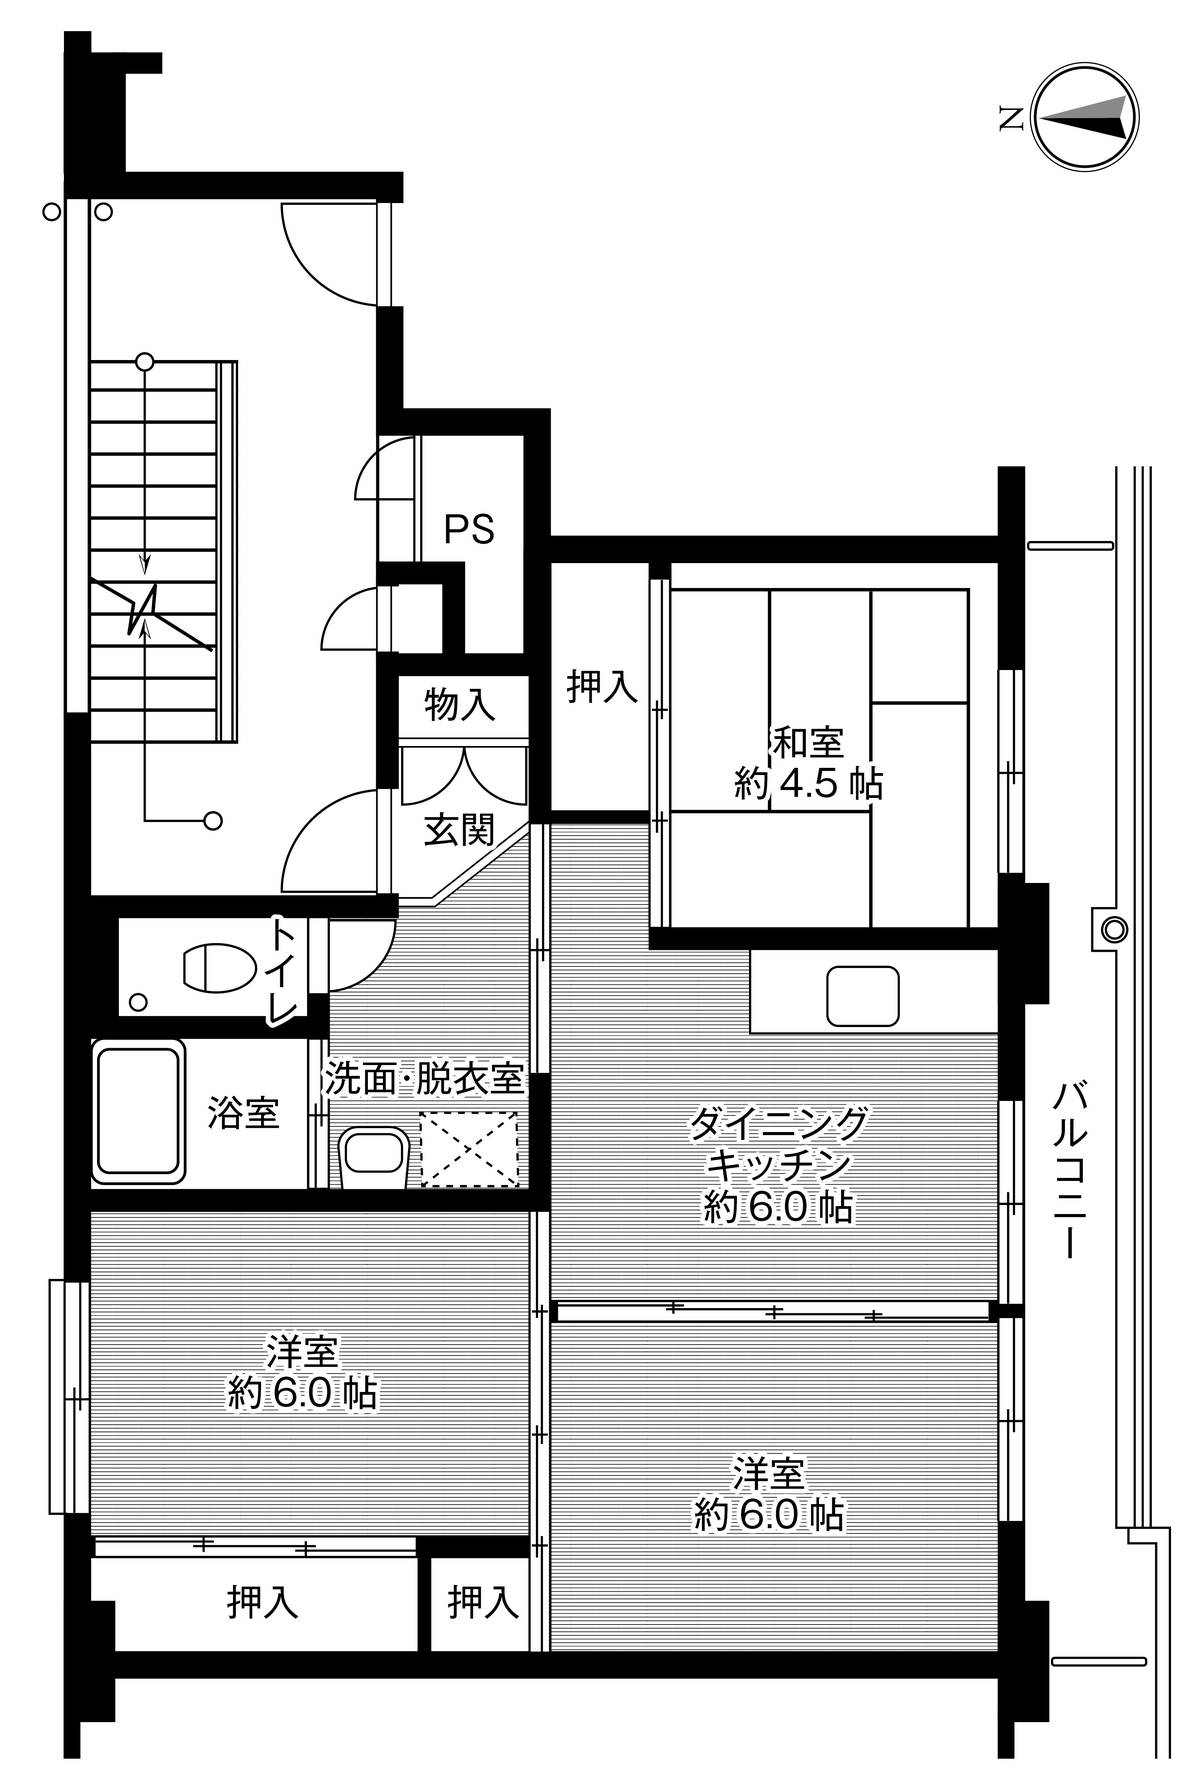 Sơ đồ phòng 3DK của Village House Aino ở Aomori-shi